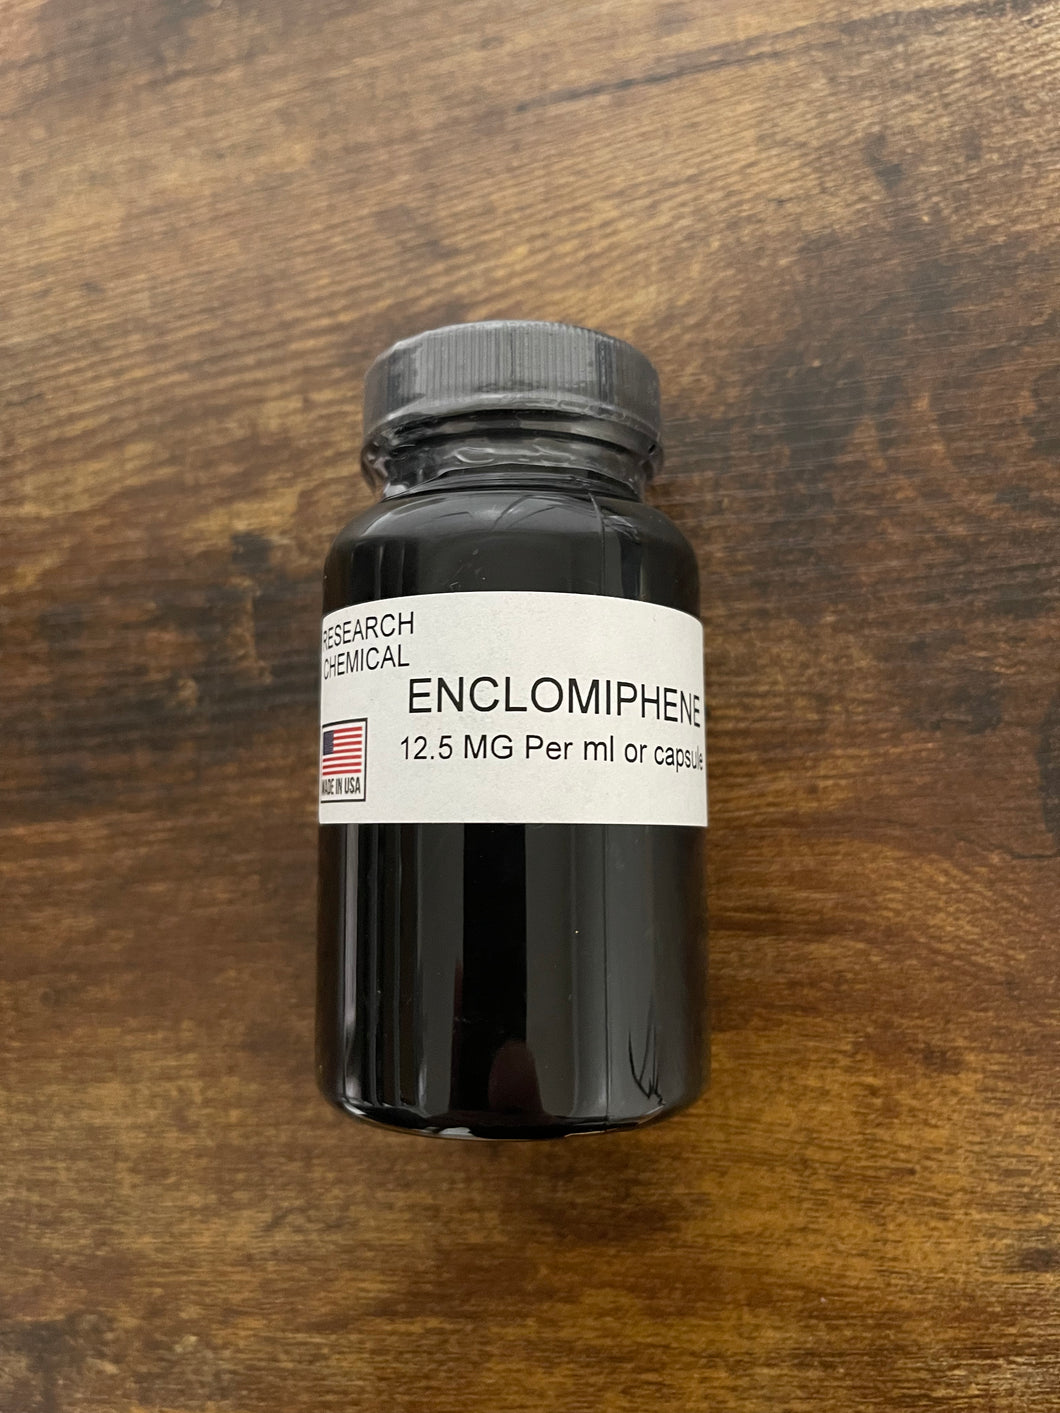 Enclomiphene 12.5